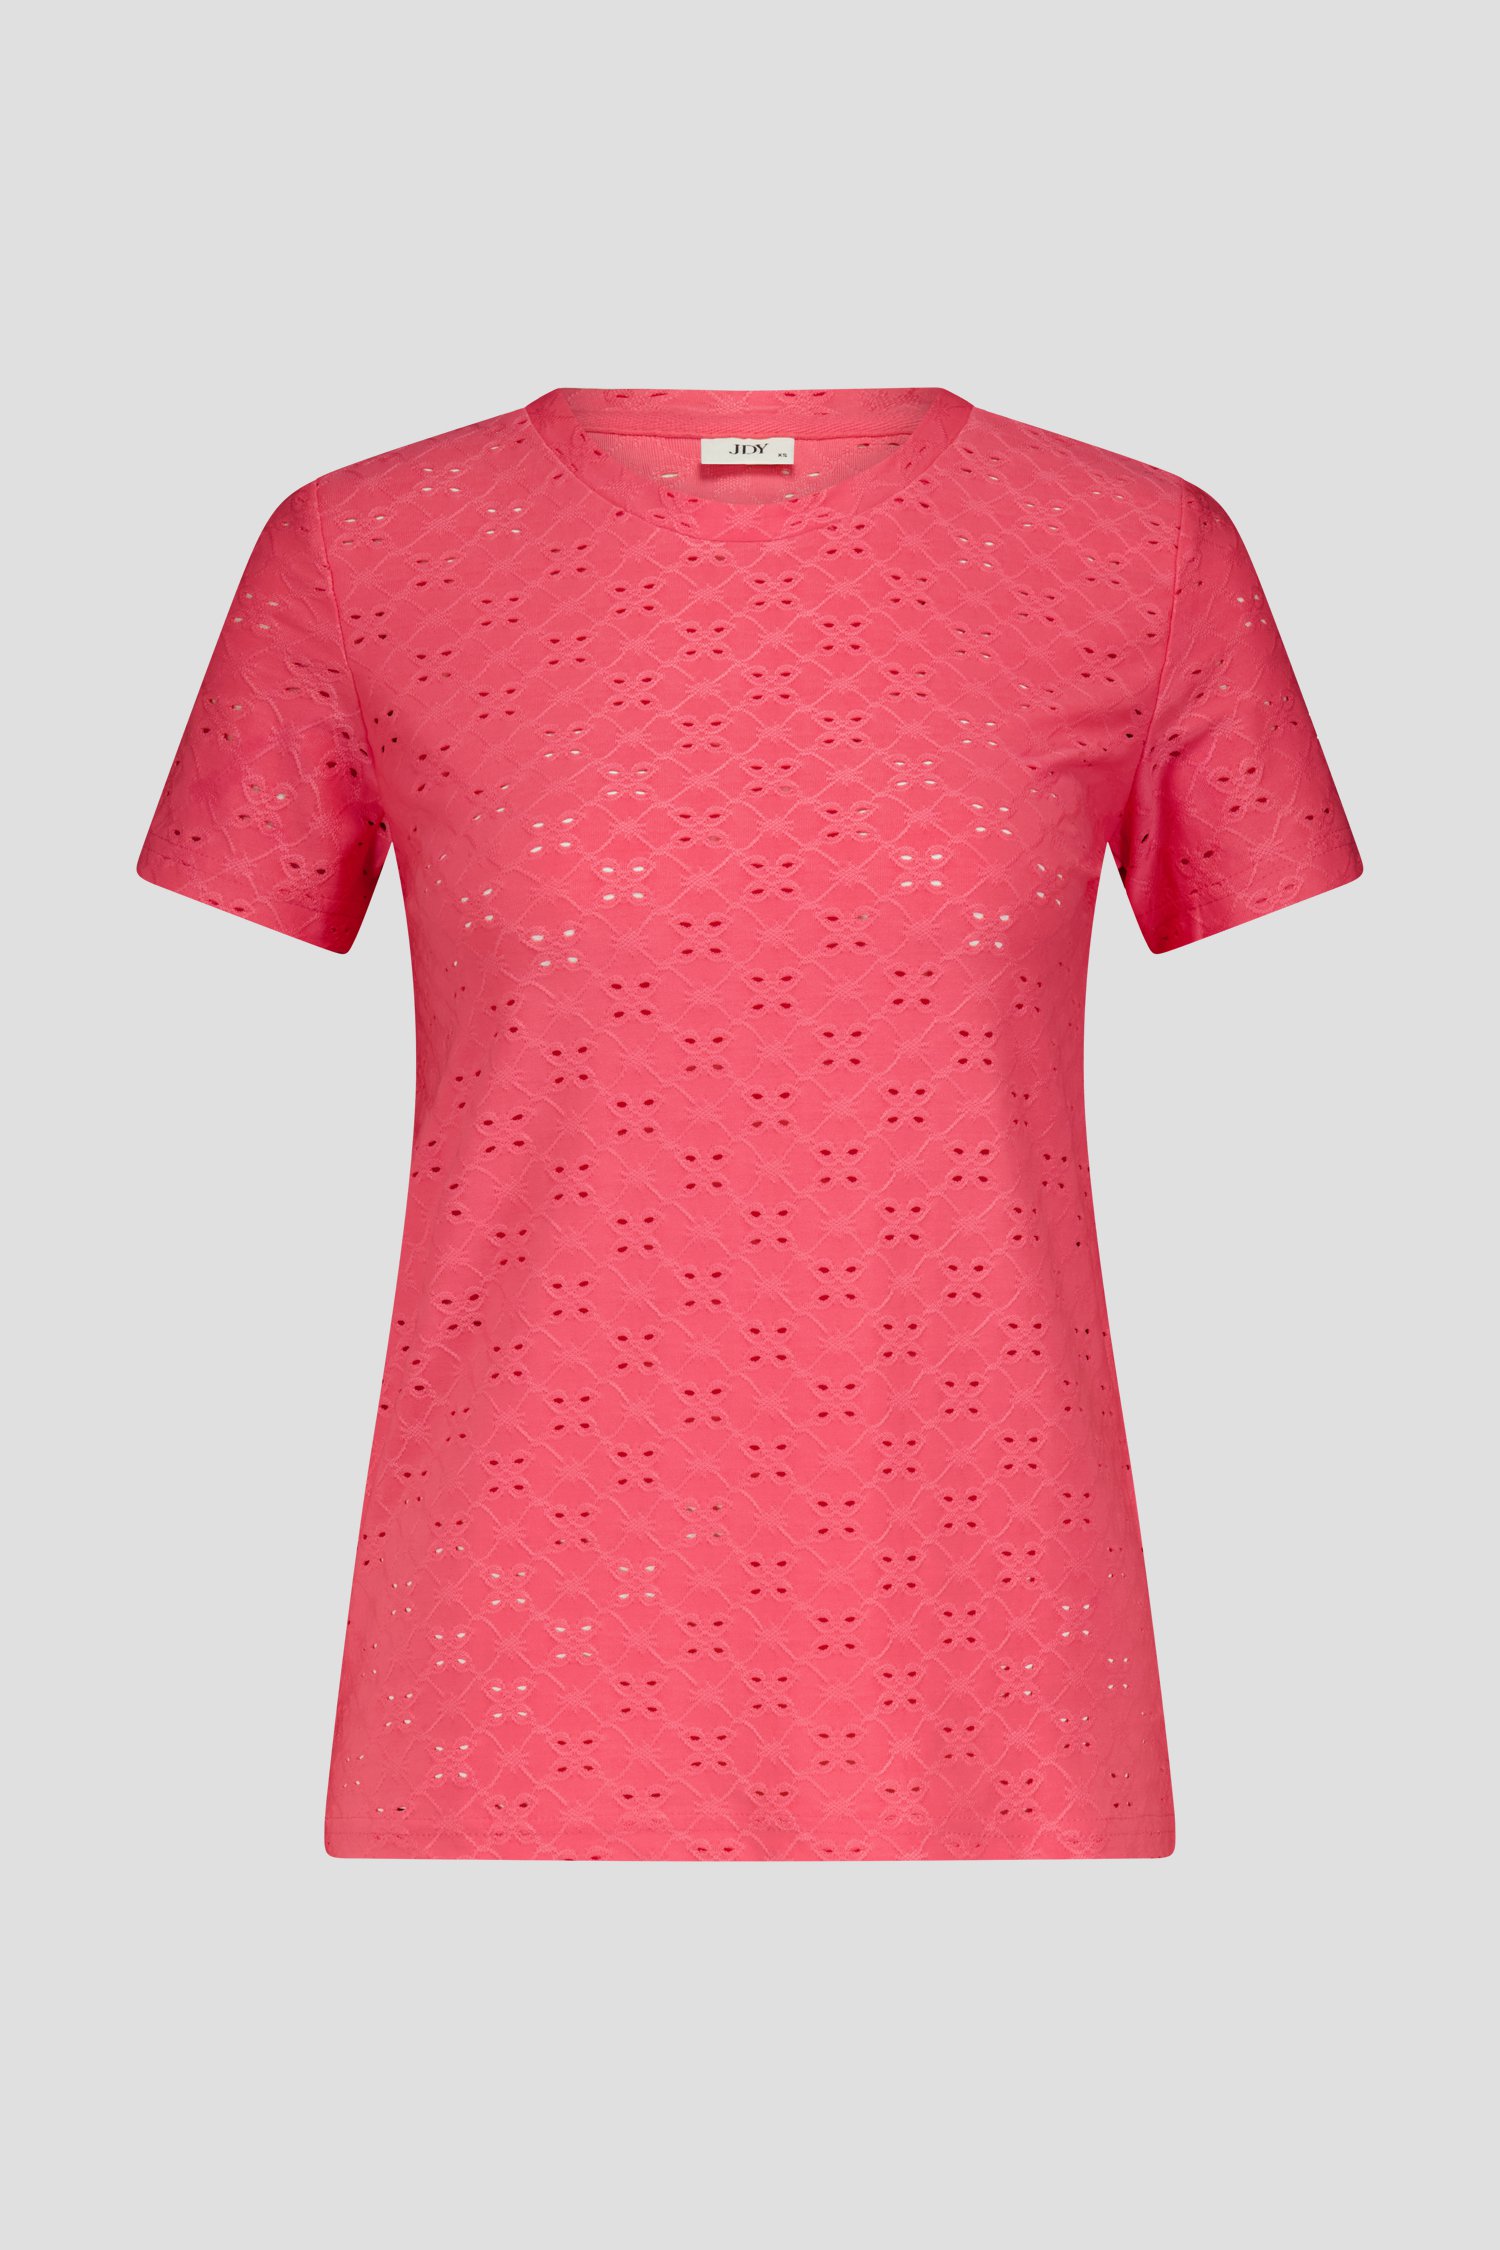 Roze T-shirt met broderie Anglaise van JDY voor Dames